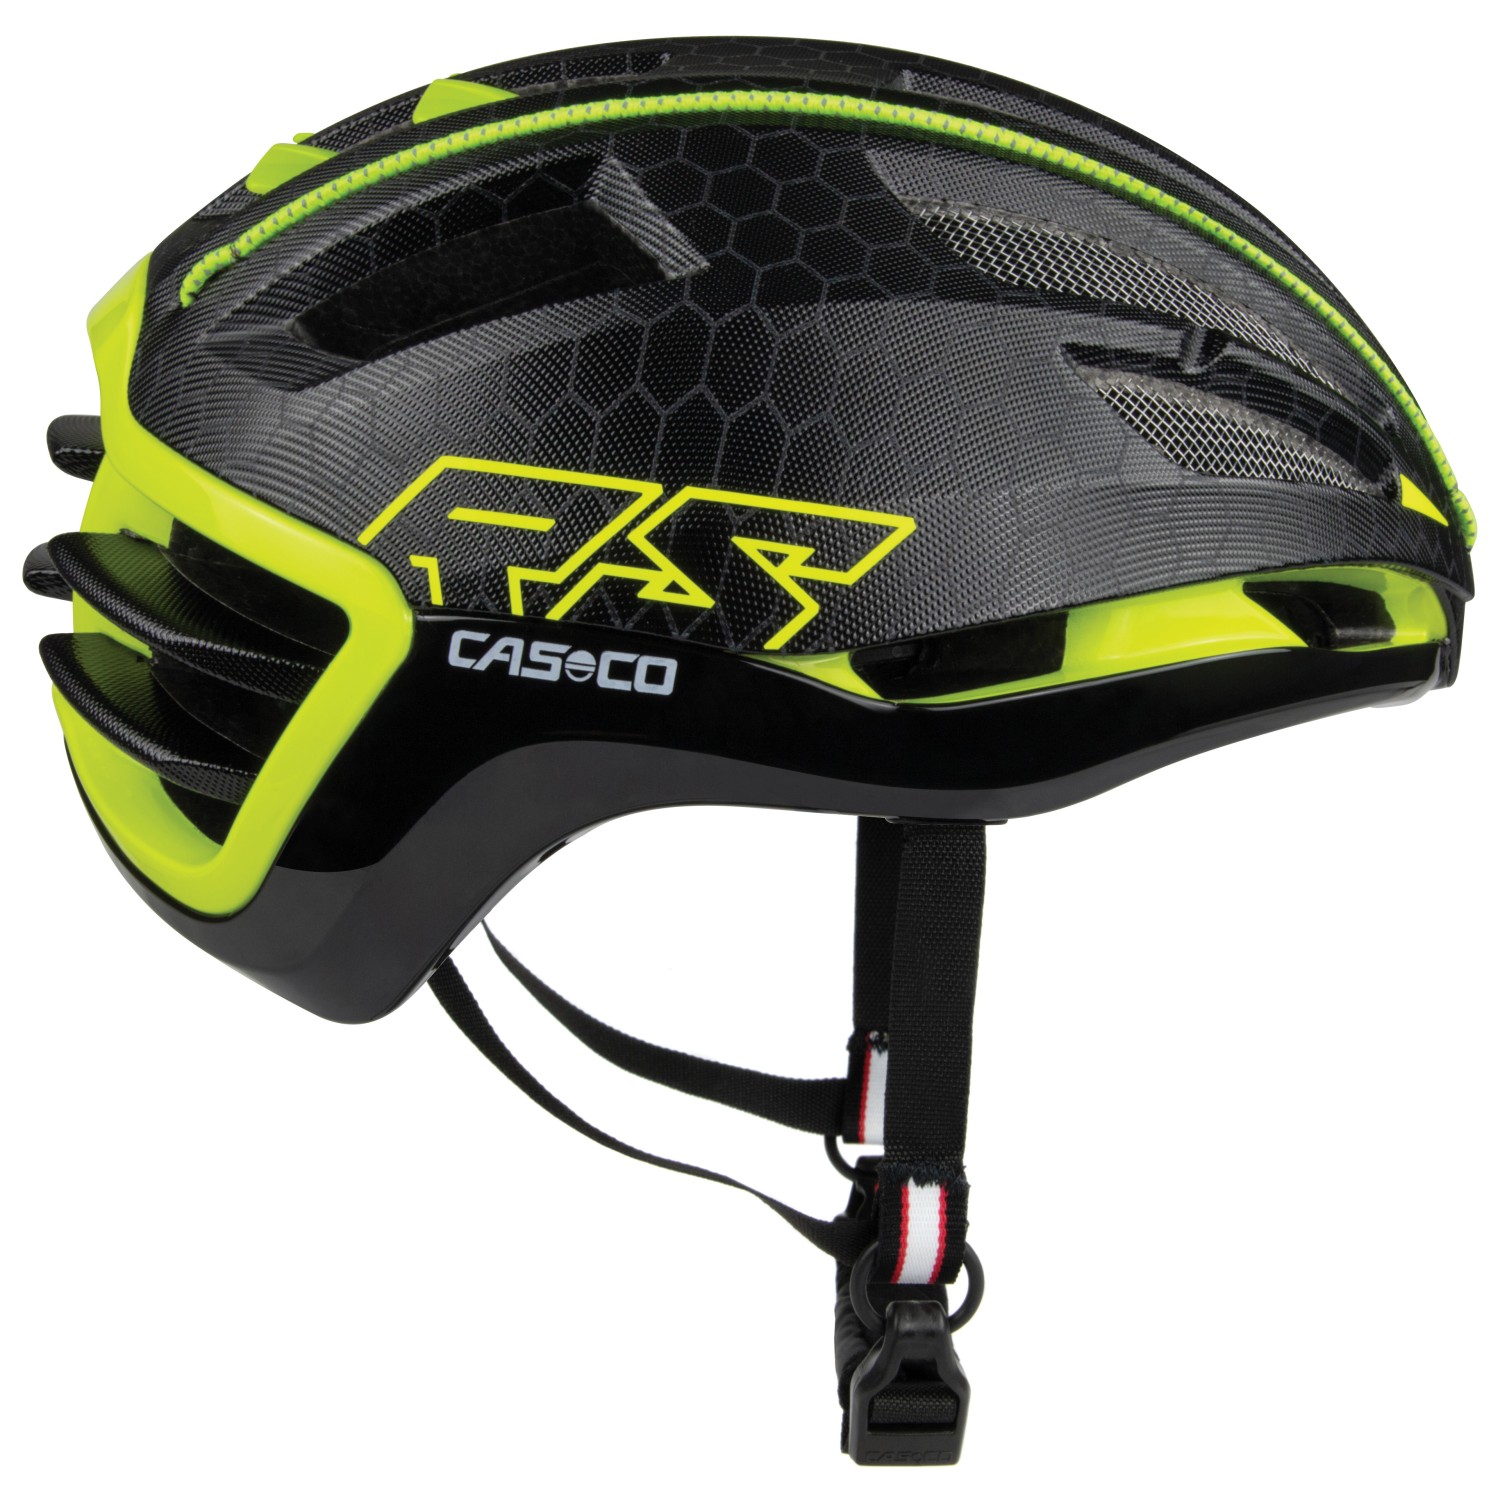 Велосипедный шлем Casco Speedairo2, цвет Black/Neonyellow аксессуары casco для мотоцикла шлем протектор для носа вентиляционное отверстие для k1 k3sv защитный шлем аксессуары для мотоциклетного шлема